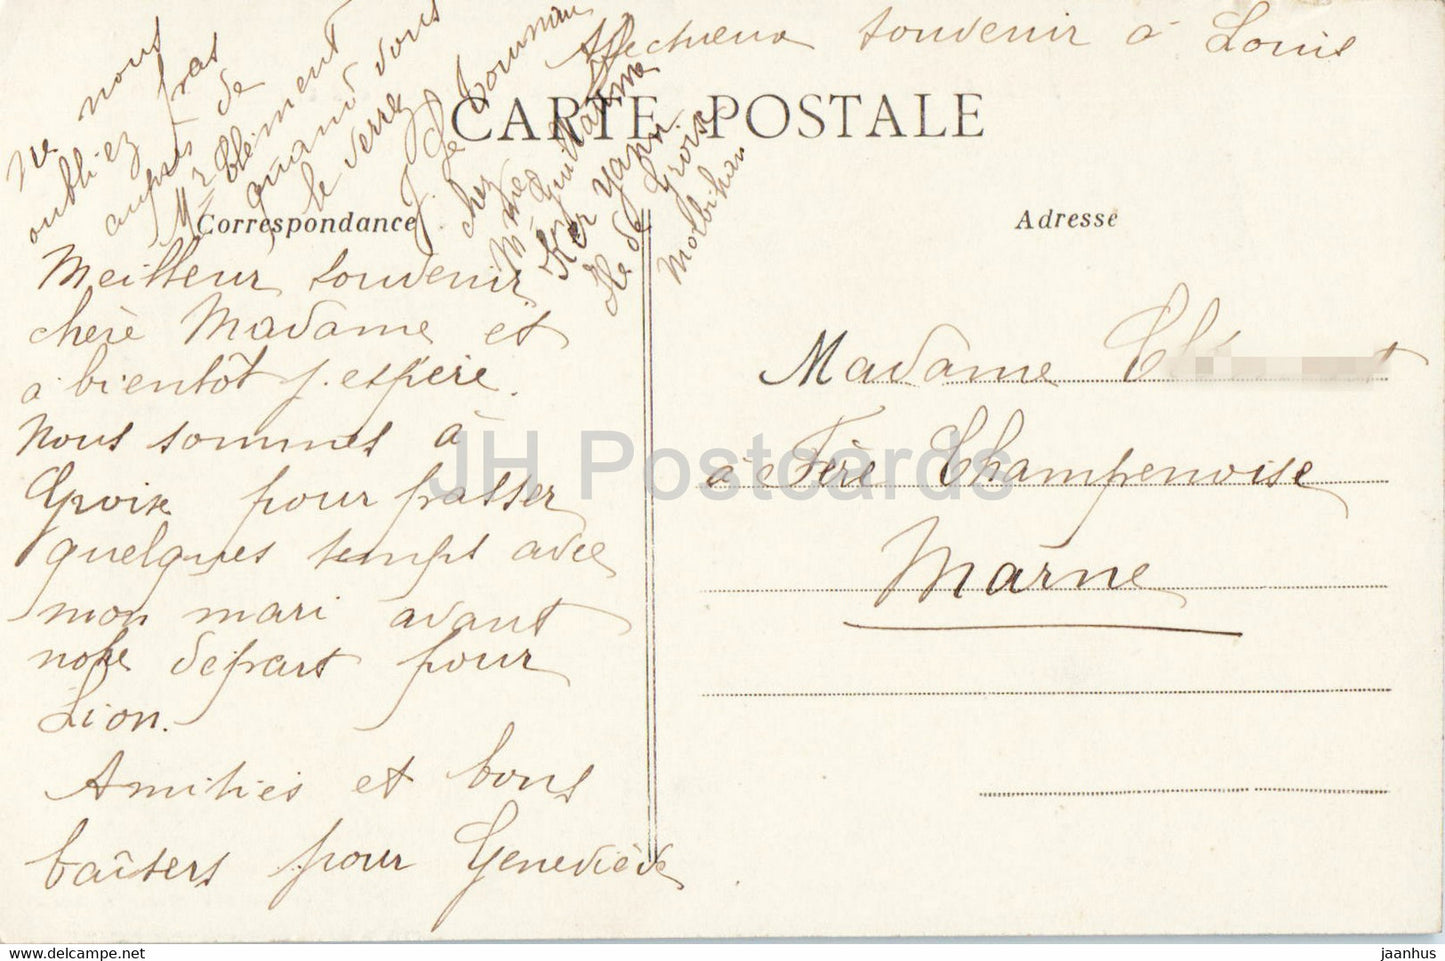 Ile de Groix - Rochers de Locmaria - La Pointe des Chats - 7124 - carte postale ancienne - France - occasion